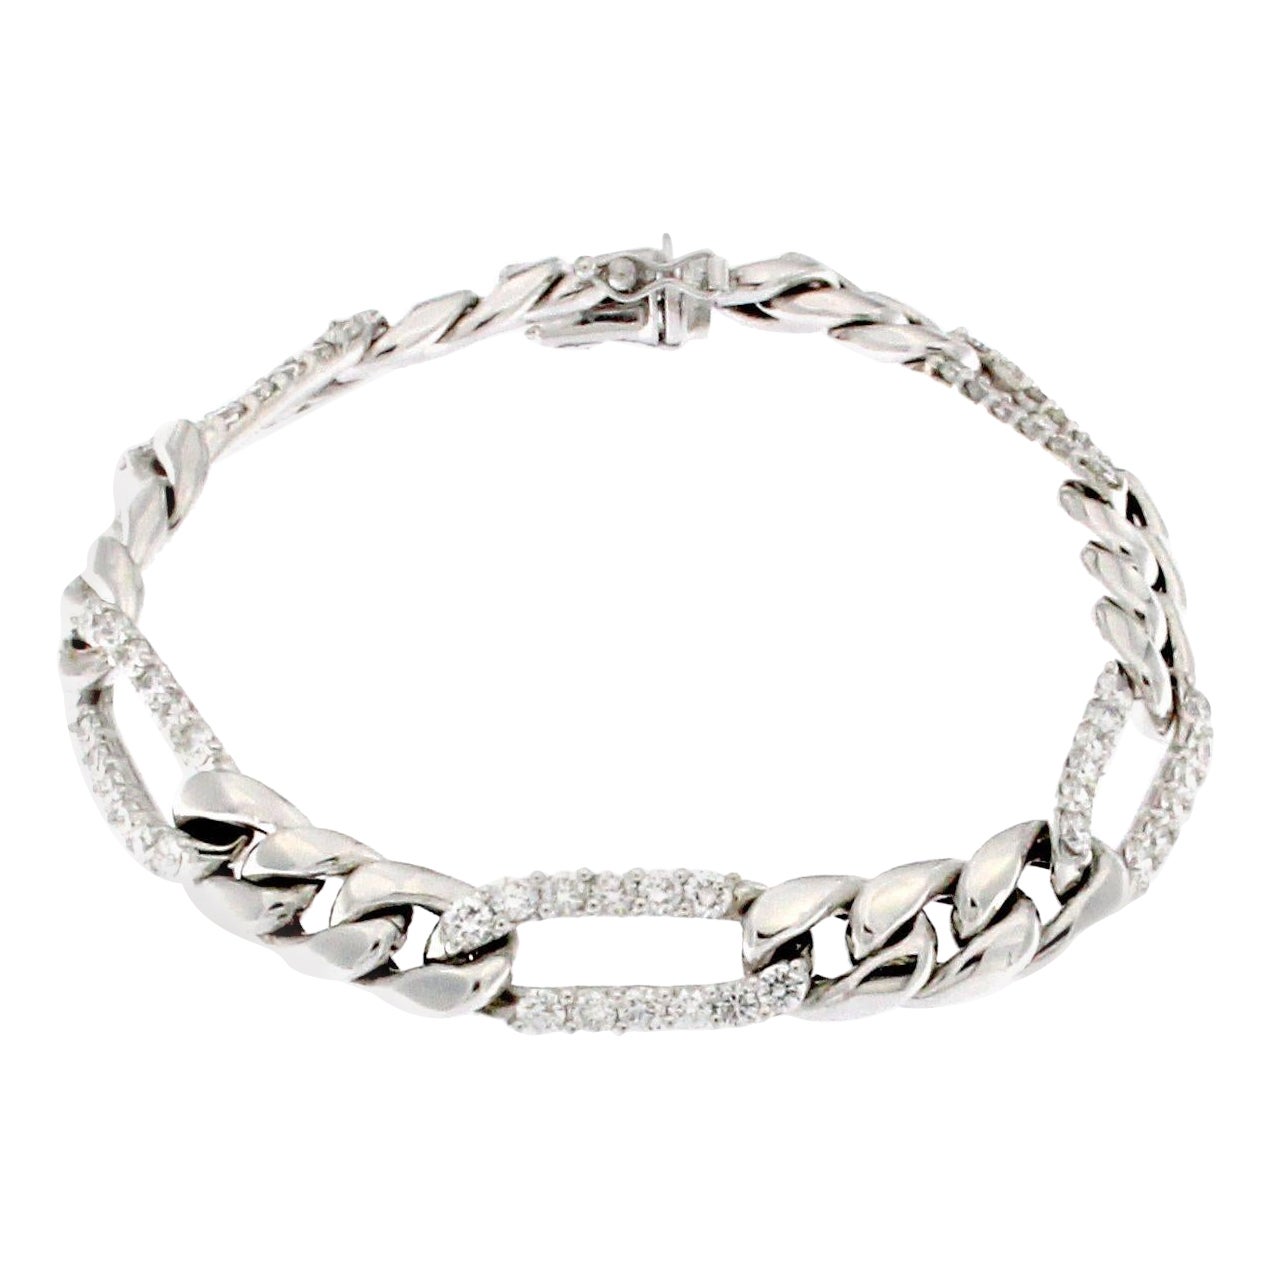 Olivo Micheletto Chain Bracelets